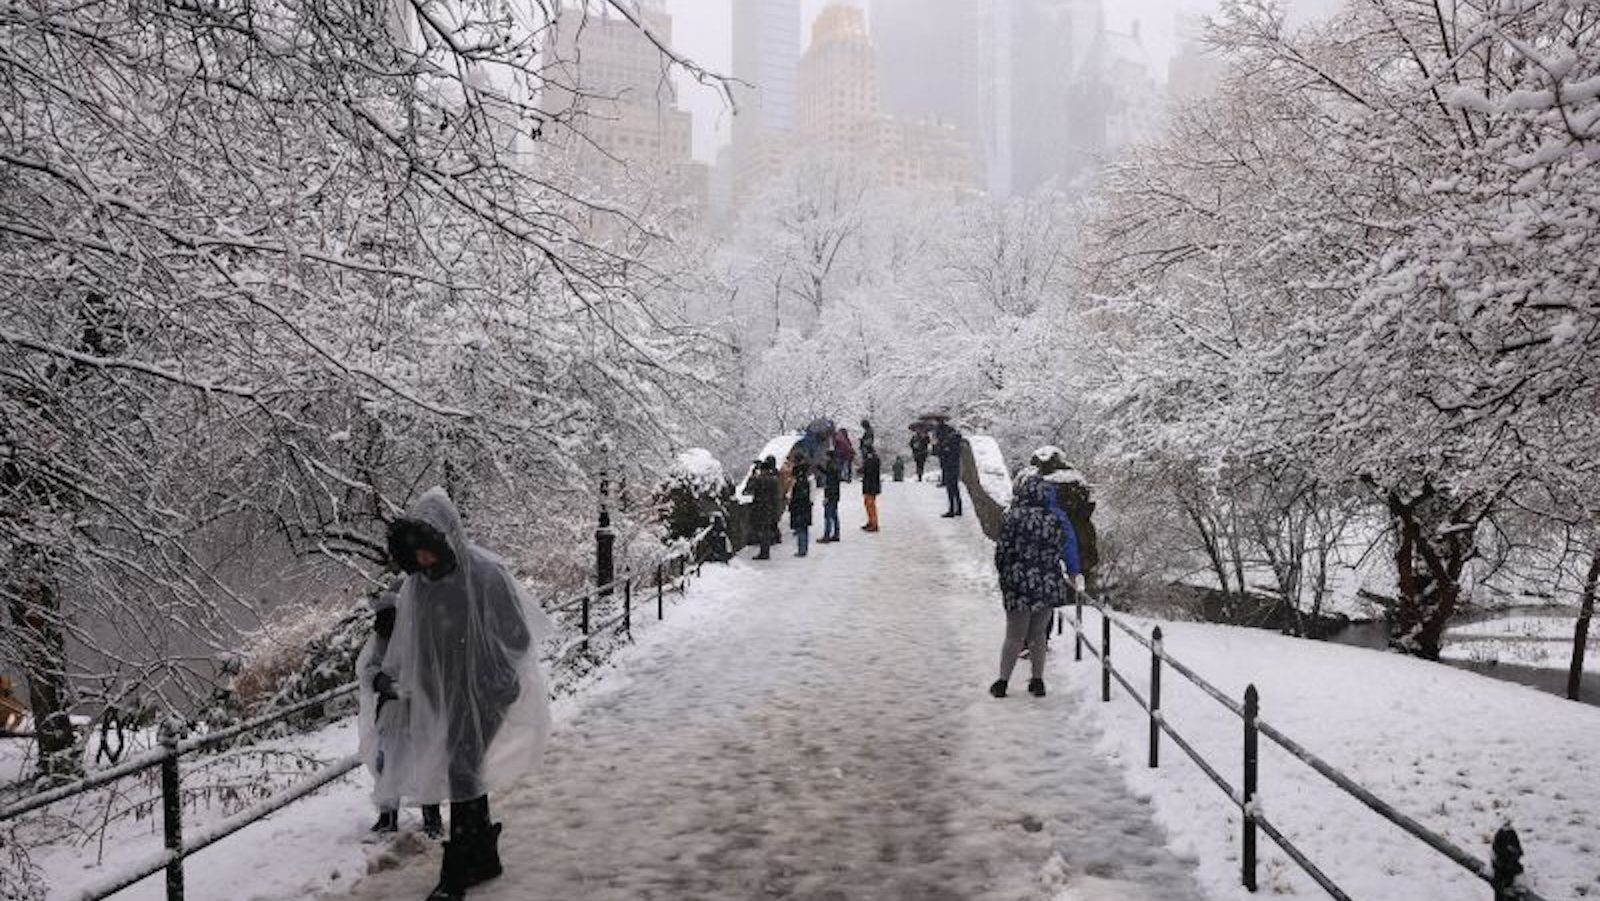 Silny północny wschód pokrywa ten obszar śniegiem, przez co jest to najbardziej śnieżny dzień w Nowym Jorku od dwóch lat